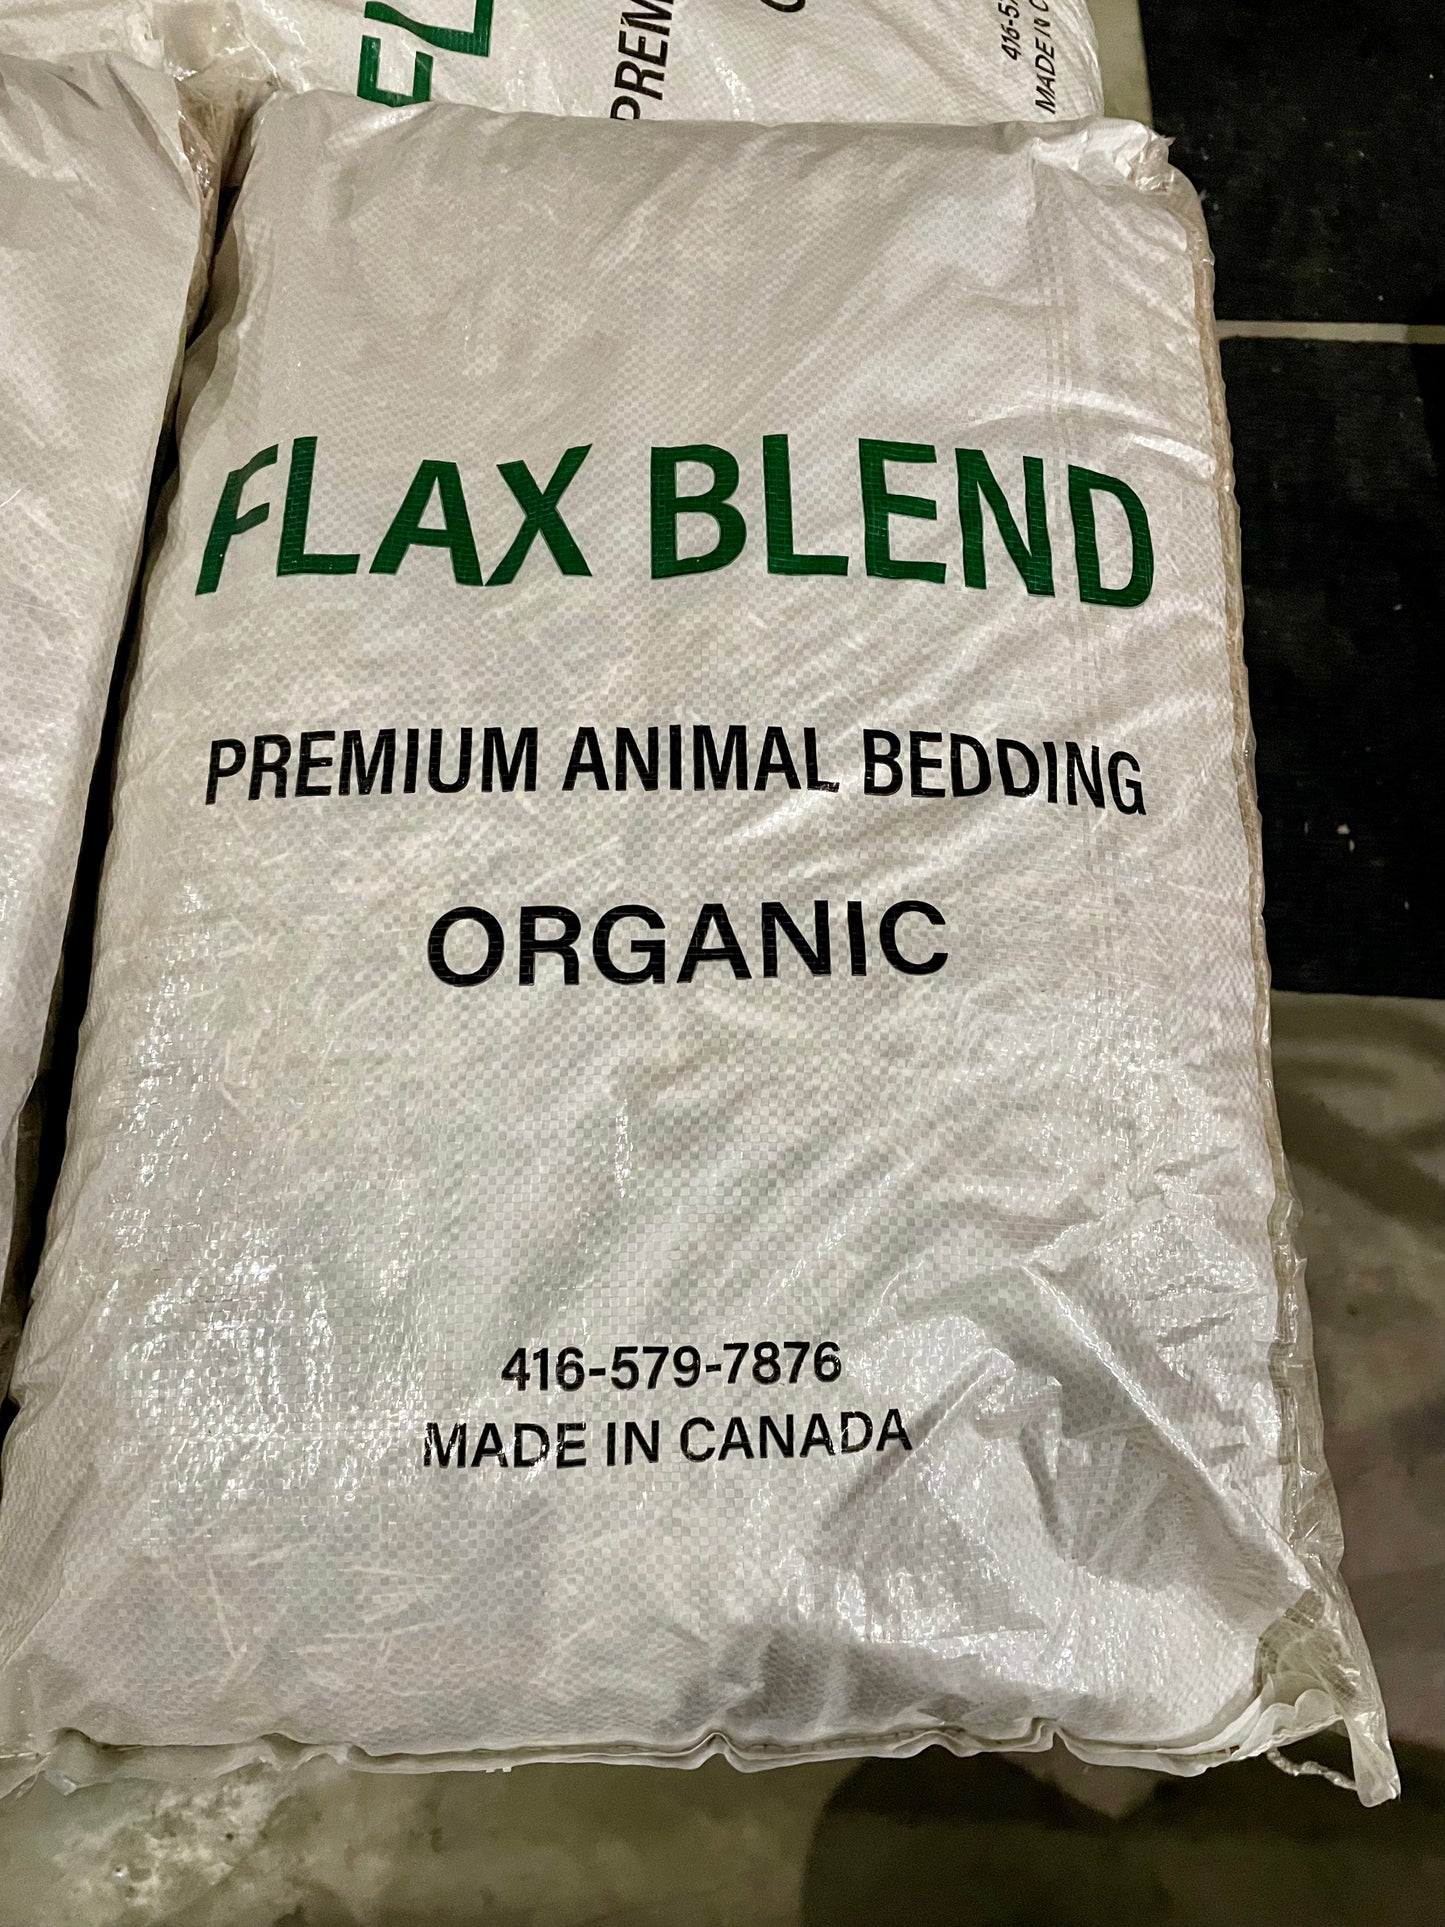 Prairie Blend Flax Bedding